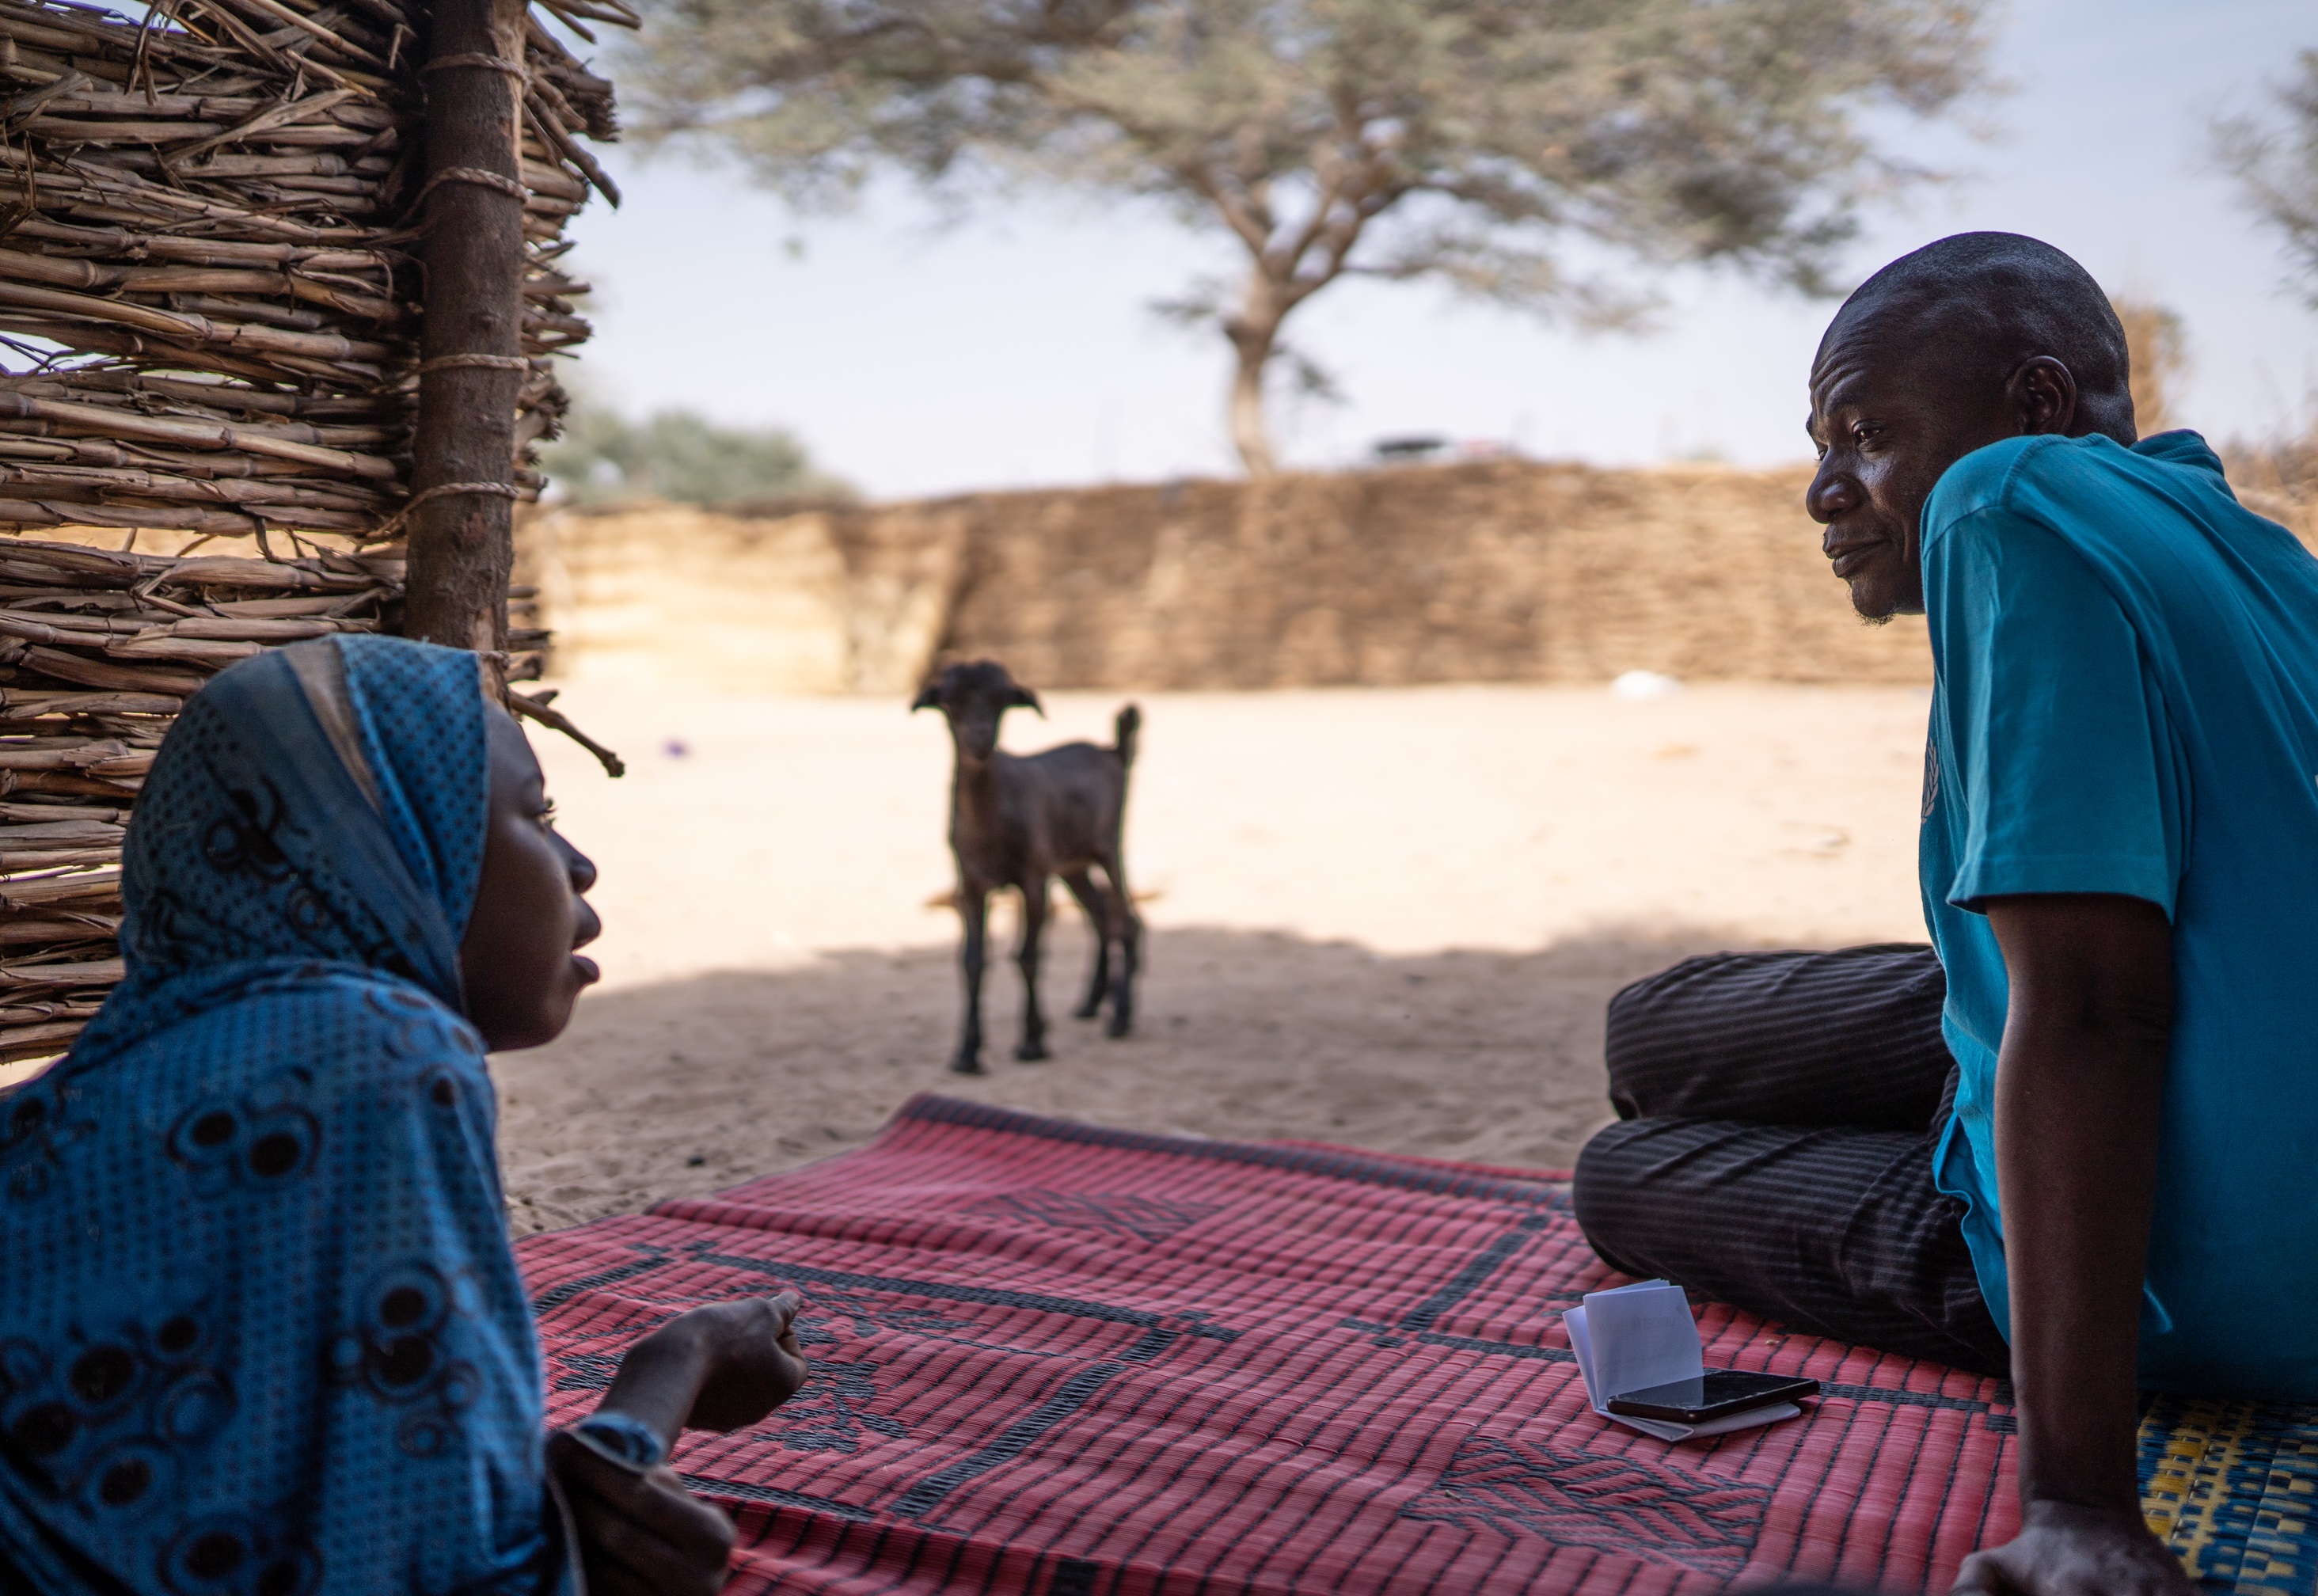 Unicef trabaja con socios para garantizar que los servicios de protección infantil puedan continuar en medio de la Covid-19 en zonas afectadas por conflictos en Mali , Burkina Faso y Níger.